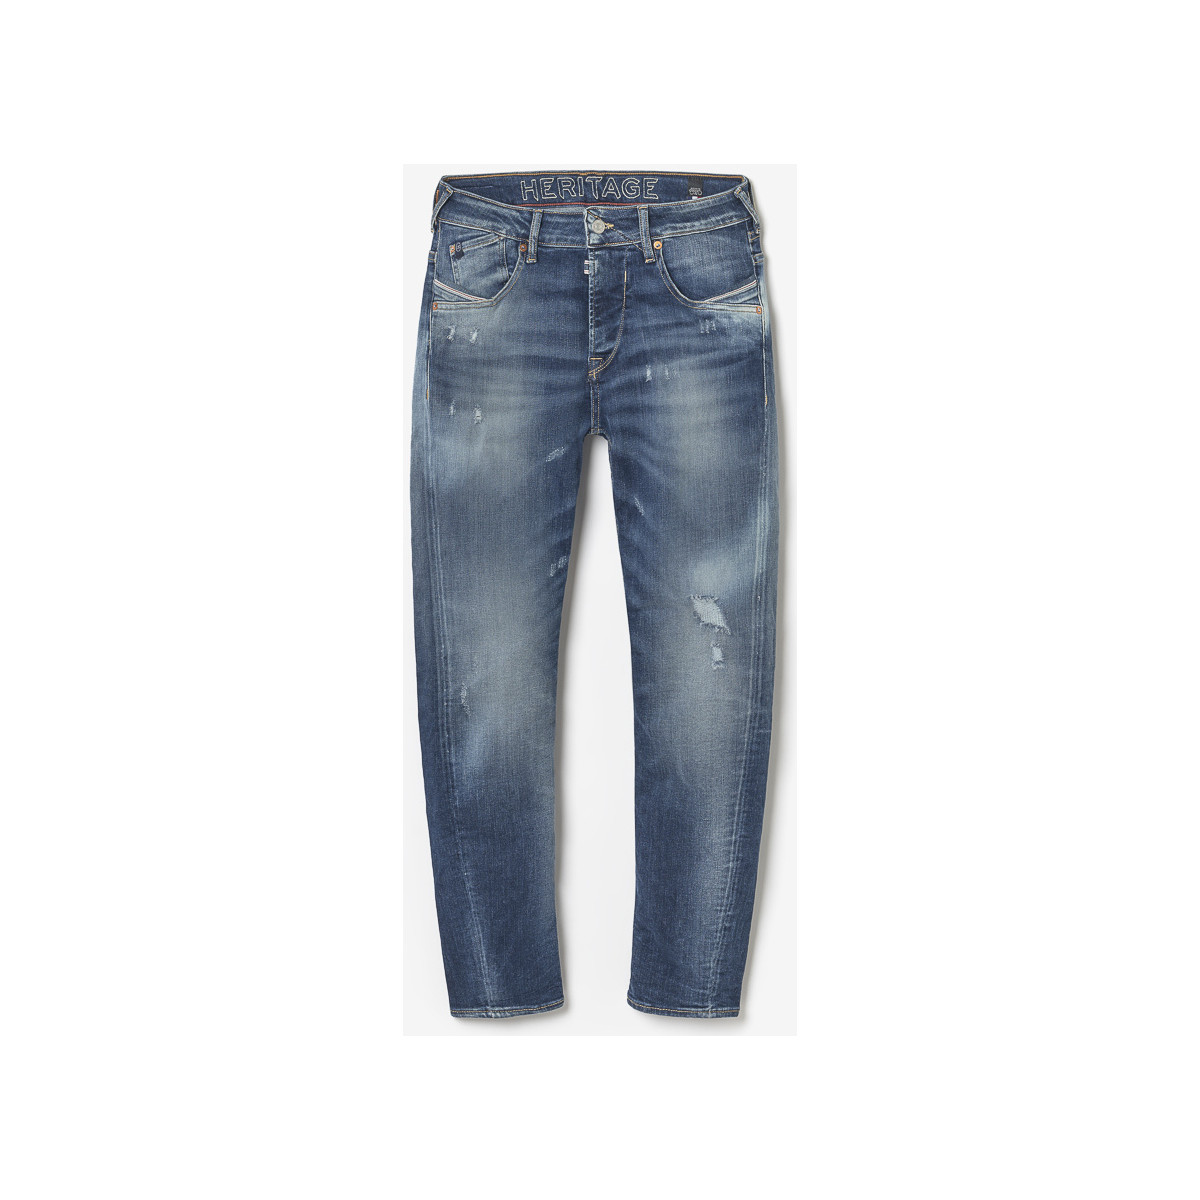 Le Temps des Cerises Bleu Blacksun 900/16 tapered jeans destroy vintage bleu ua6tRDHZ